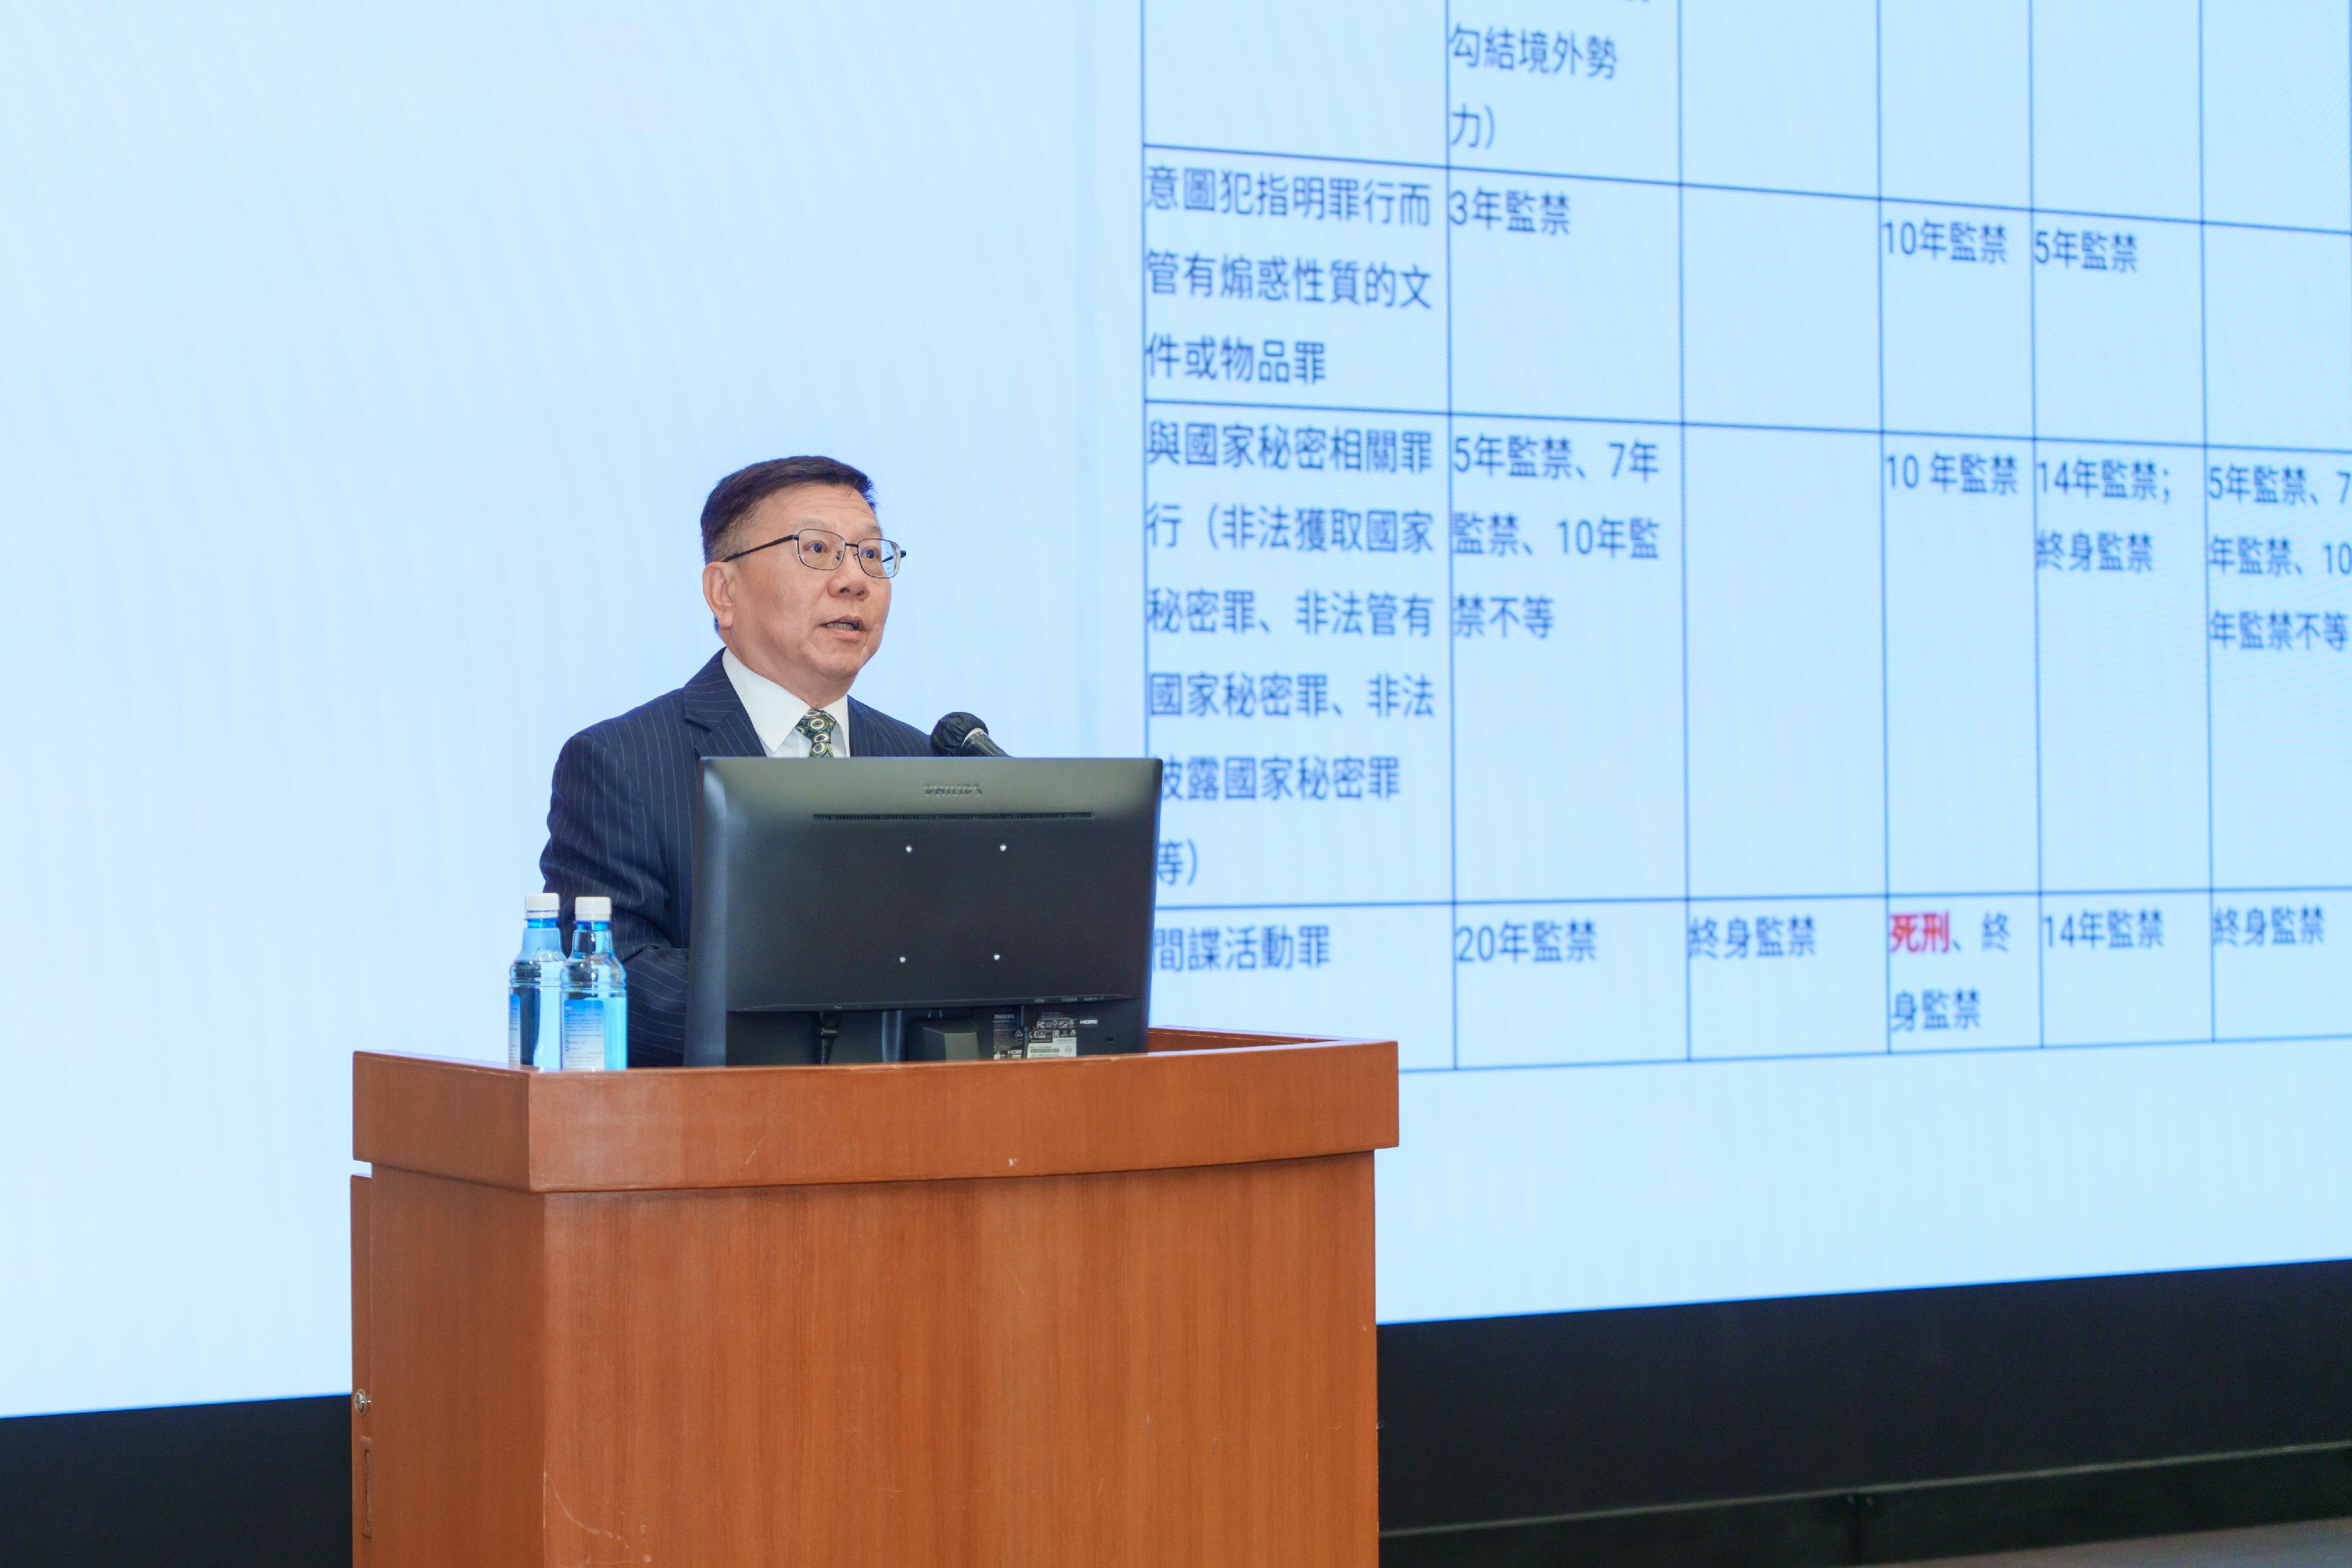 香港教育大學顧敏康教授向市民分享國家安全資訊。